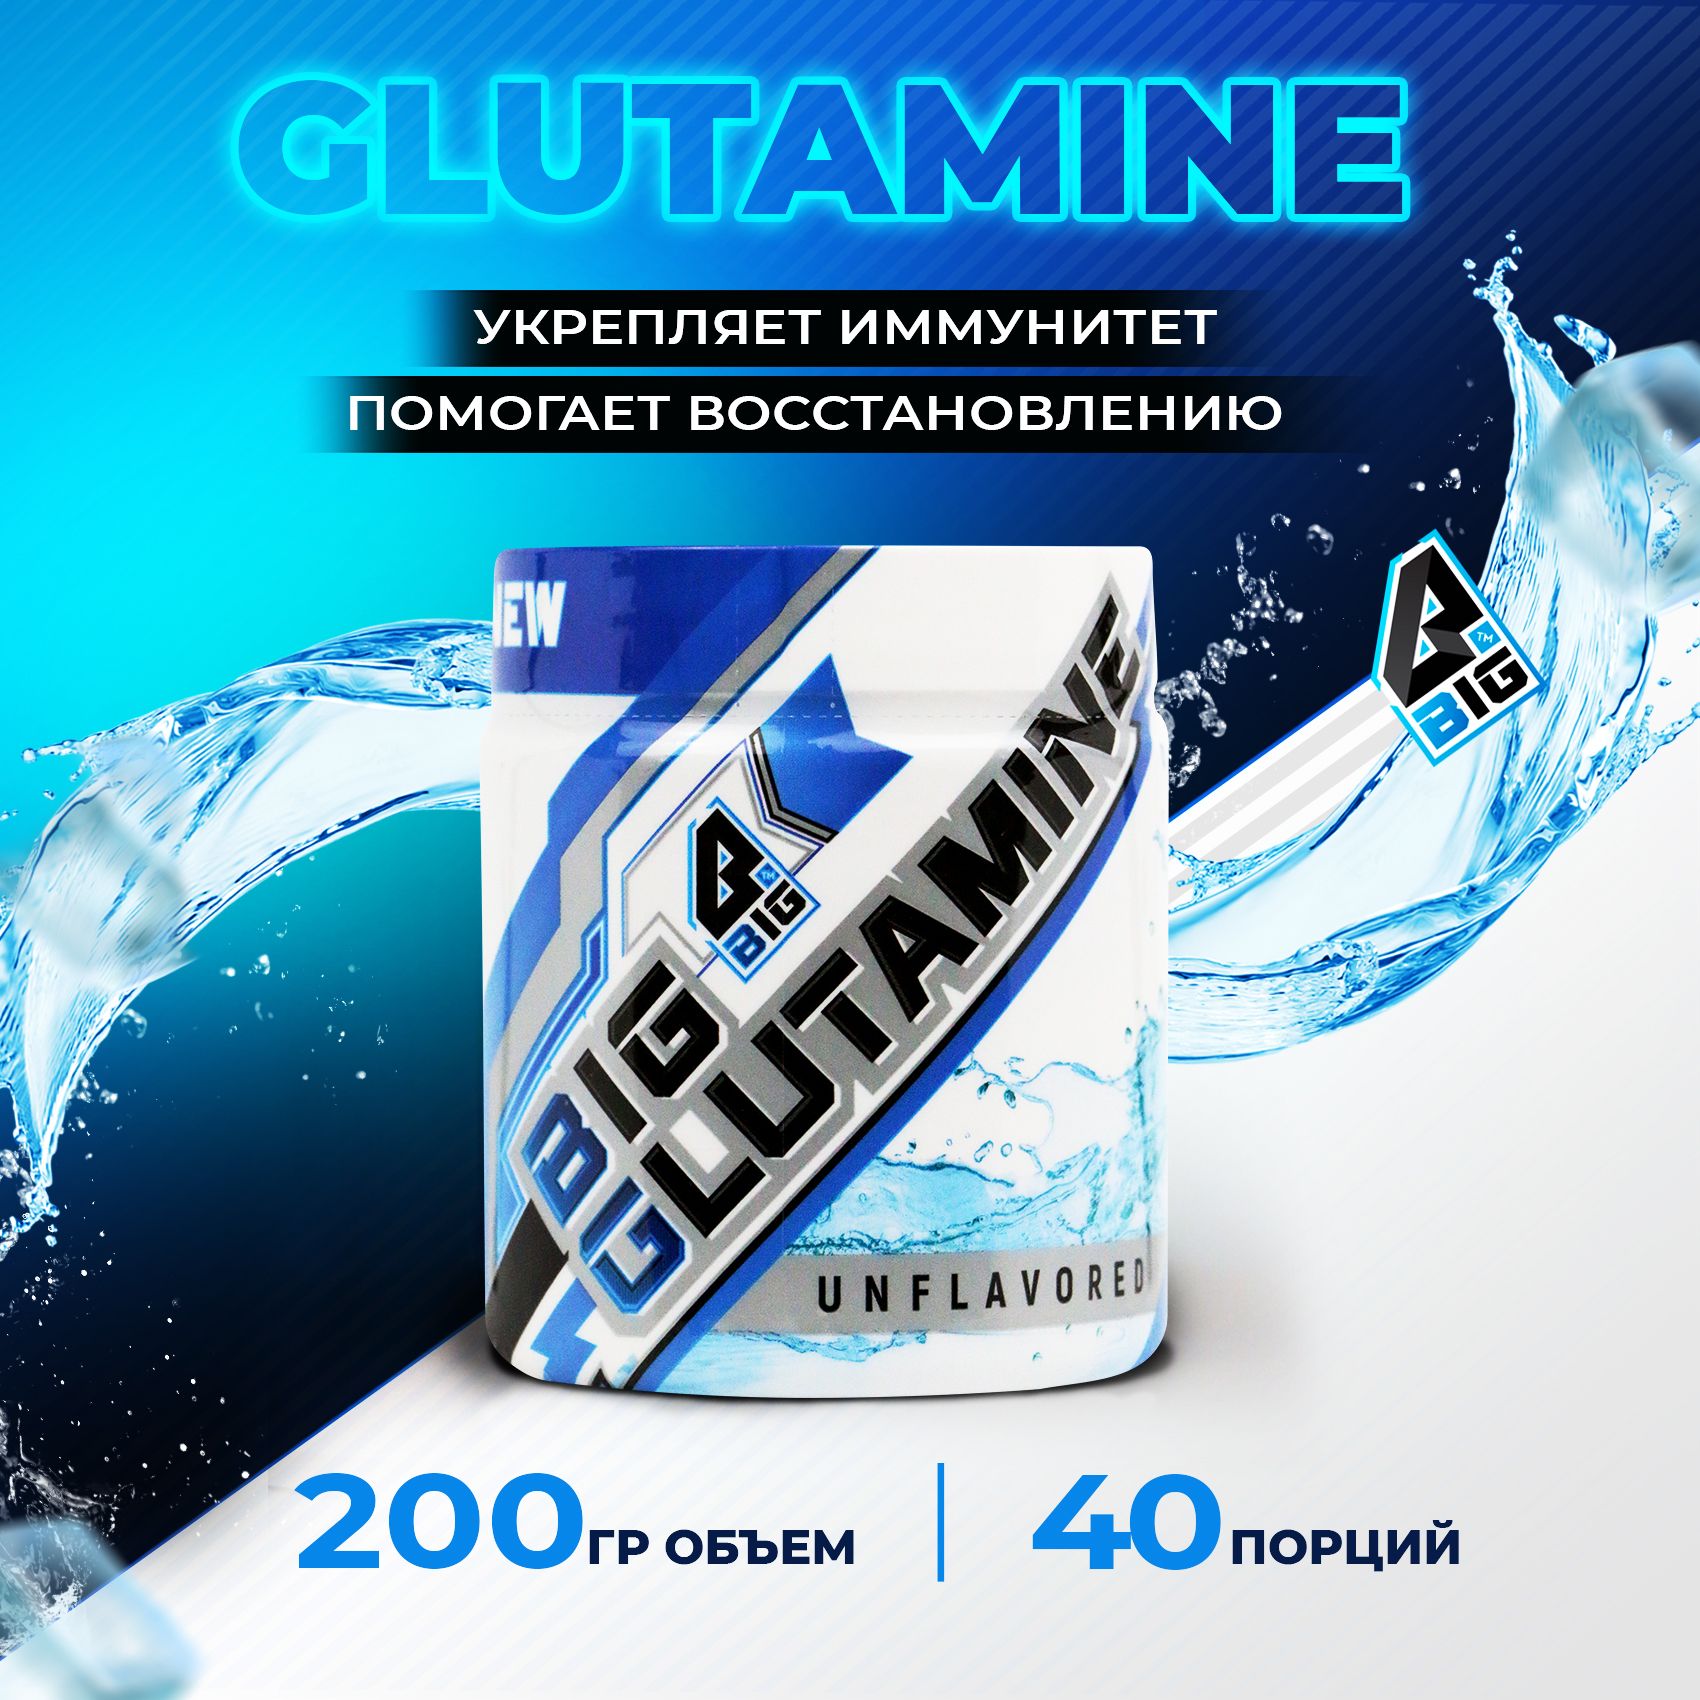 Глютамин(Glutamine)BIGSNTспортивноепитание/аминокислотадляростамышциукрепленияиммунитета,порошок,200г(40порций),безвкуса